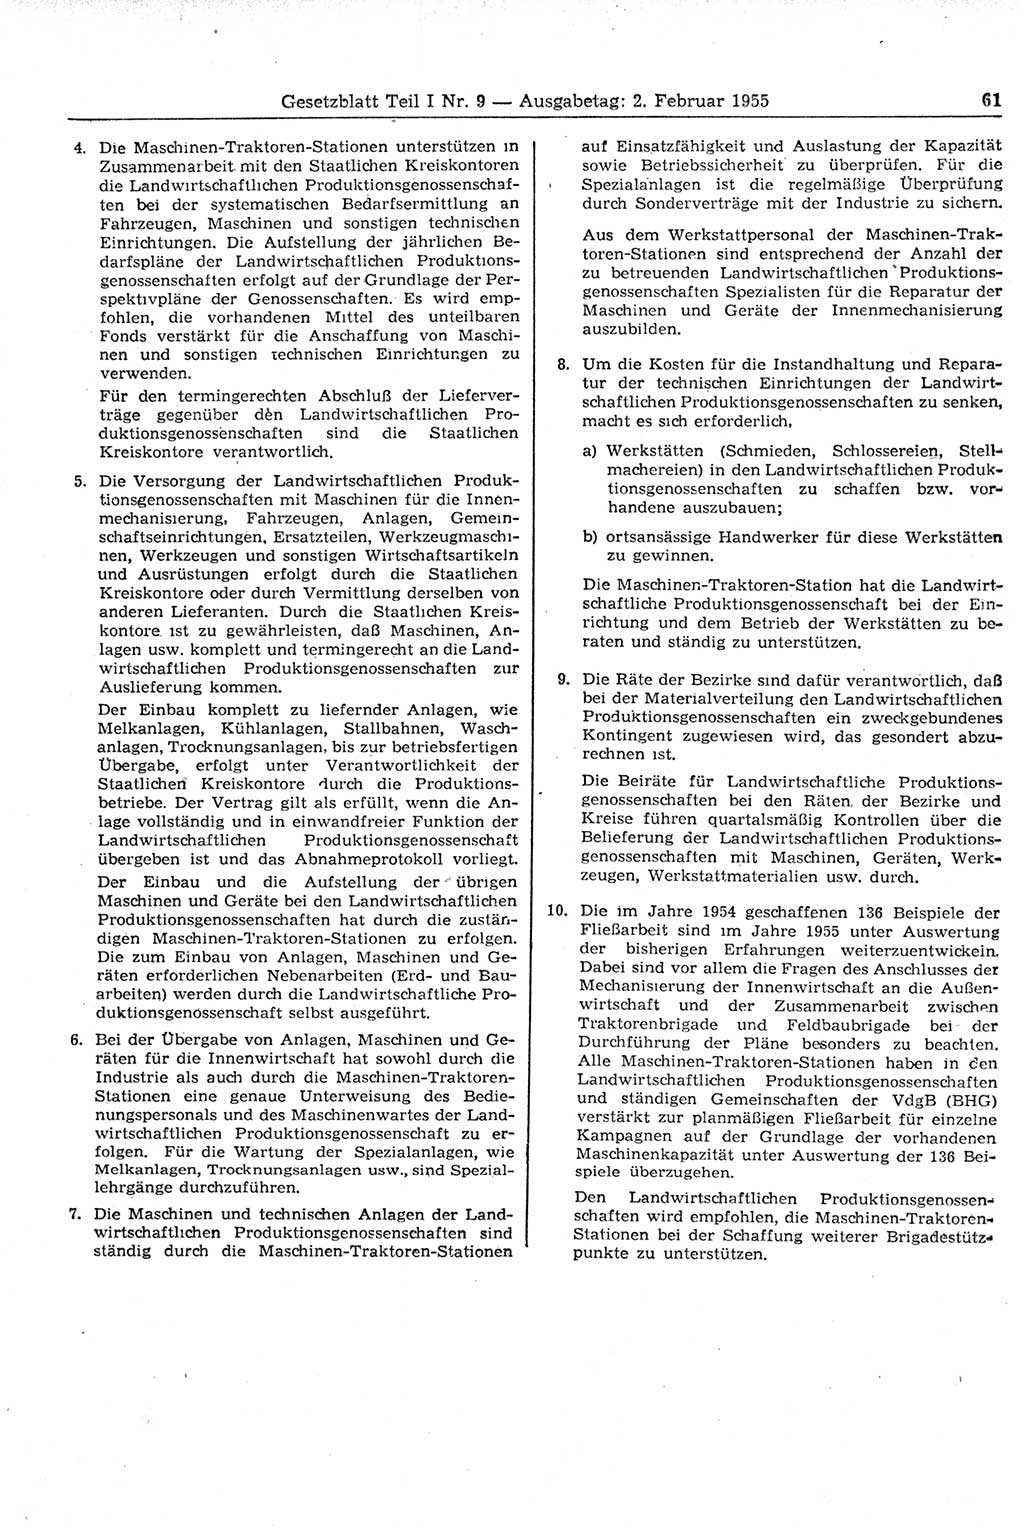 Gesetzblatt (GBl.) der Deutschen Demokratischen Republik (DDR) Teil Ⅰ 1955, Seite 61 (GBl. DDR Ⅰ 1955, S. 61)